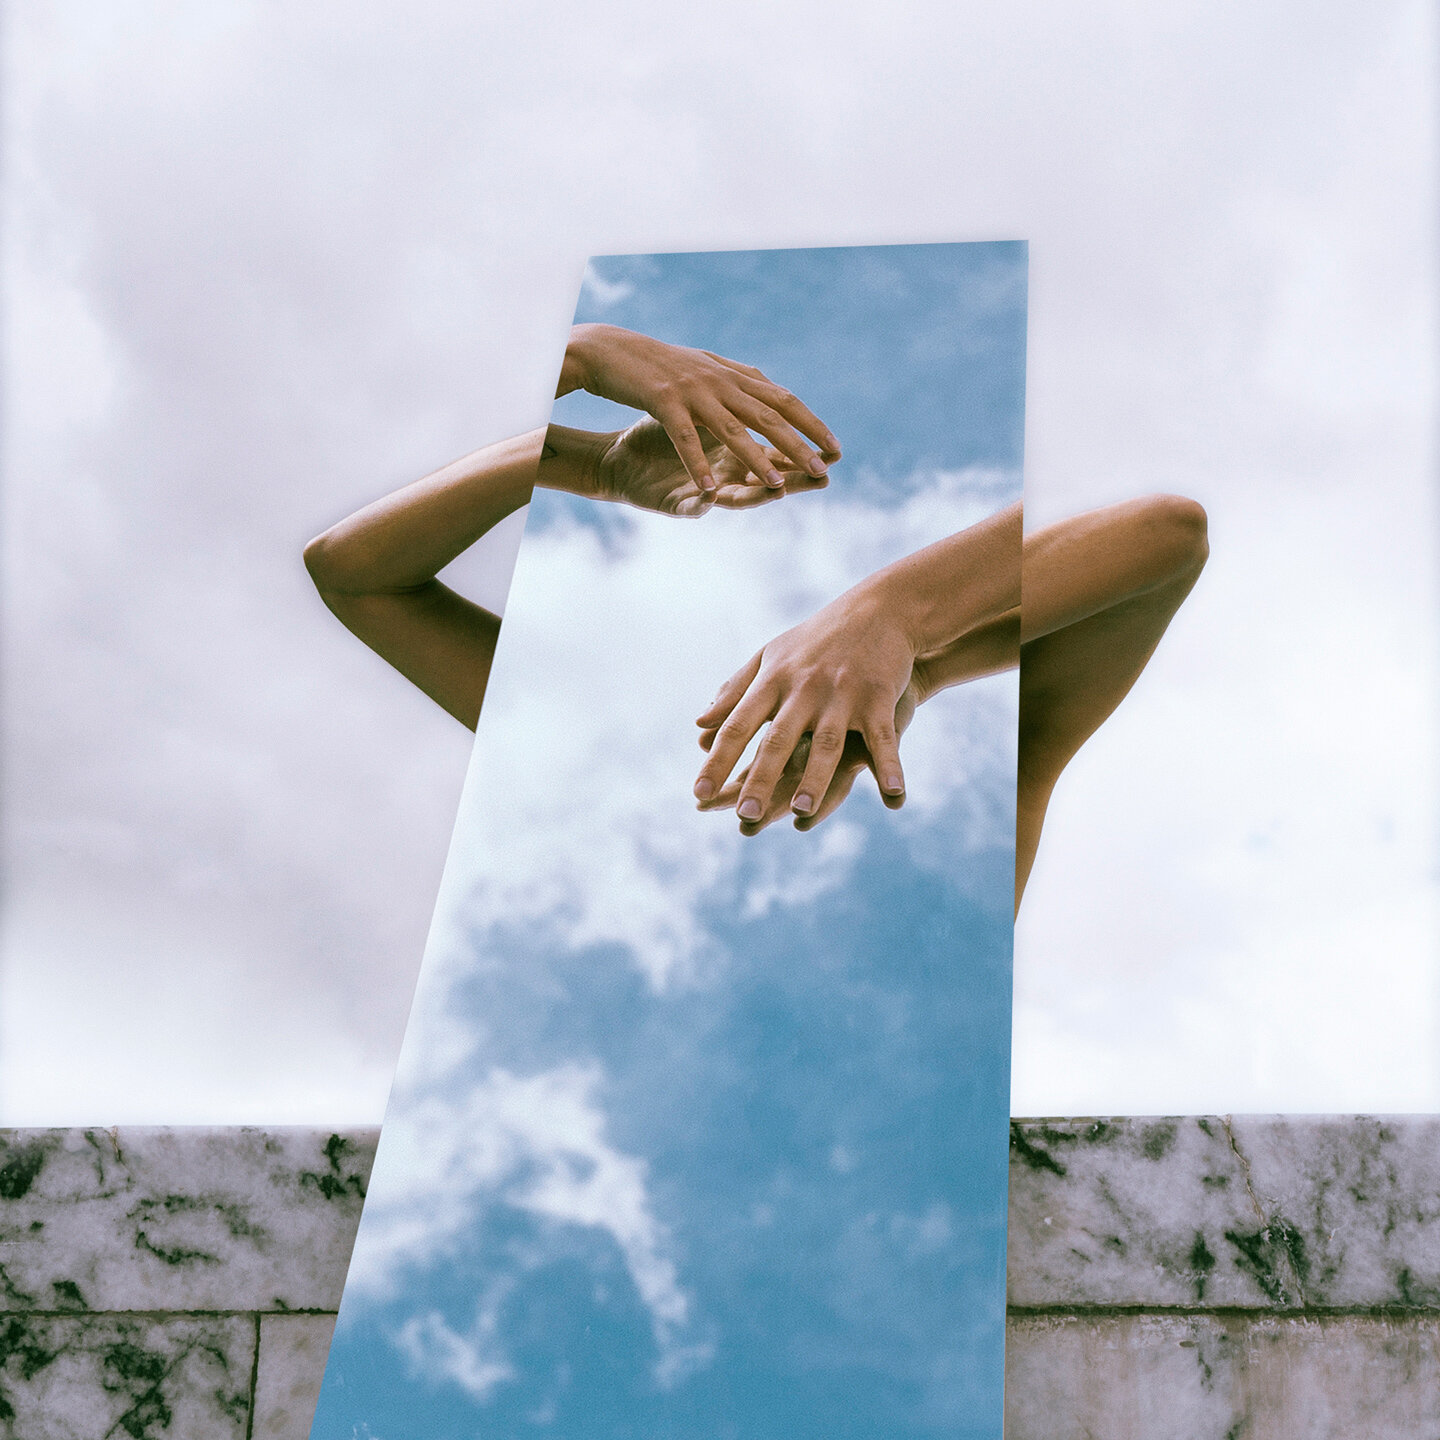 Camilo Séptimo — Eco cover artwork